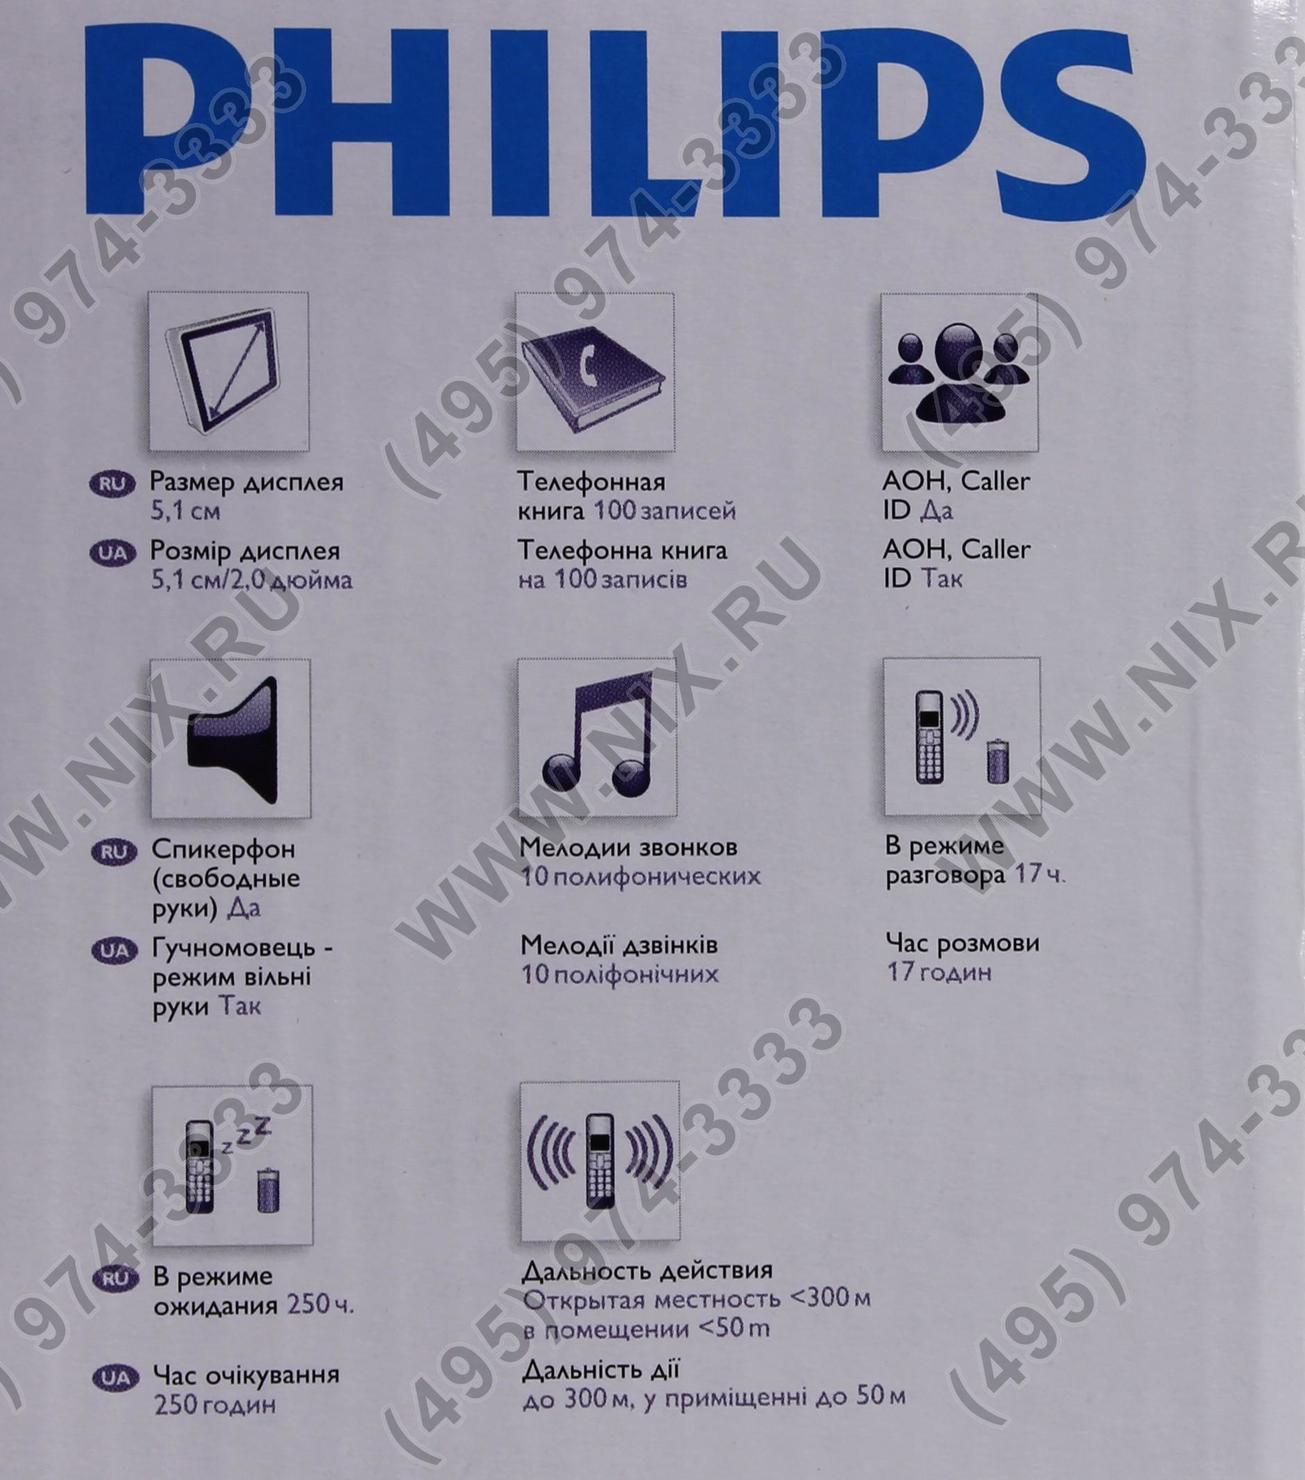 Телефон филипс значки. Philips Xenium значки на дисплее. Кнопочный телефон Philips Xenium значки на экране. Значки на экране телефона Philips кнопочный. Значки на телефоне Филипс кнопочный.